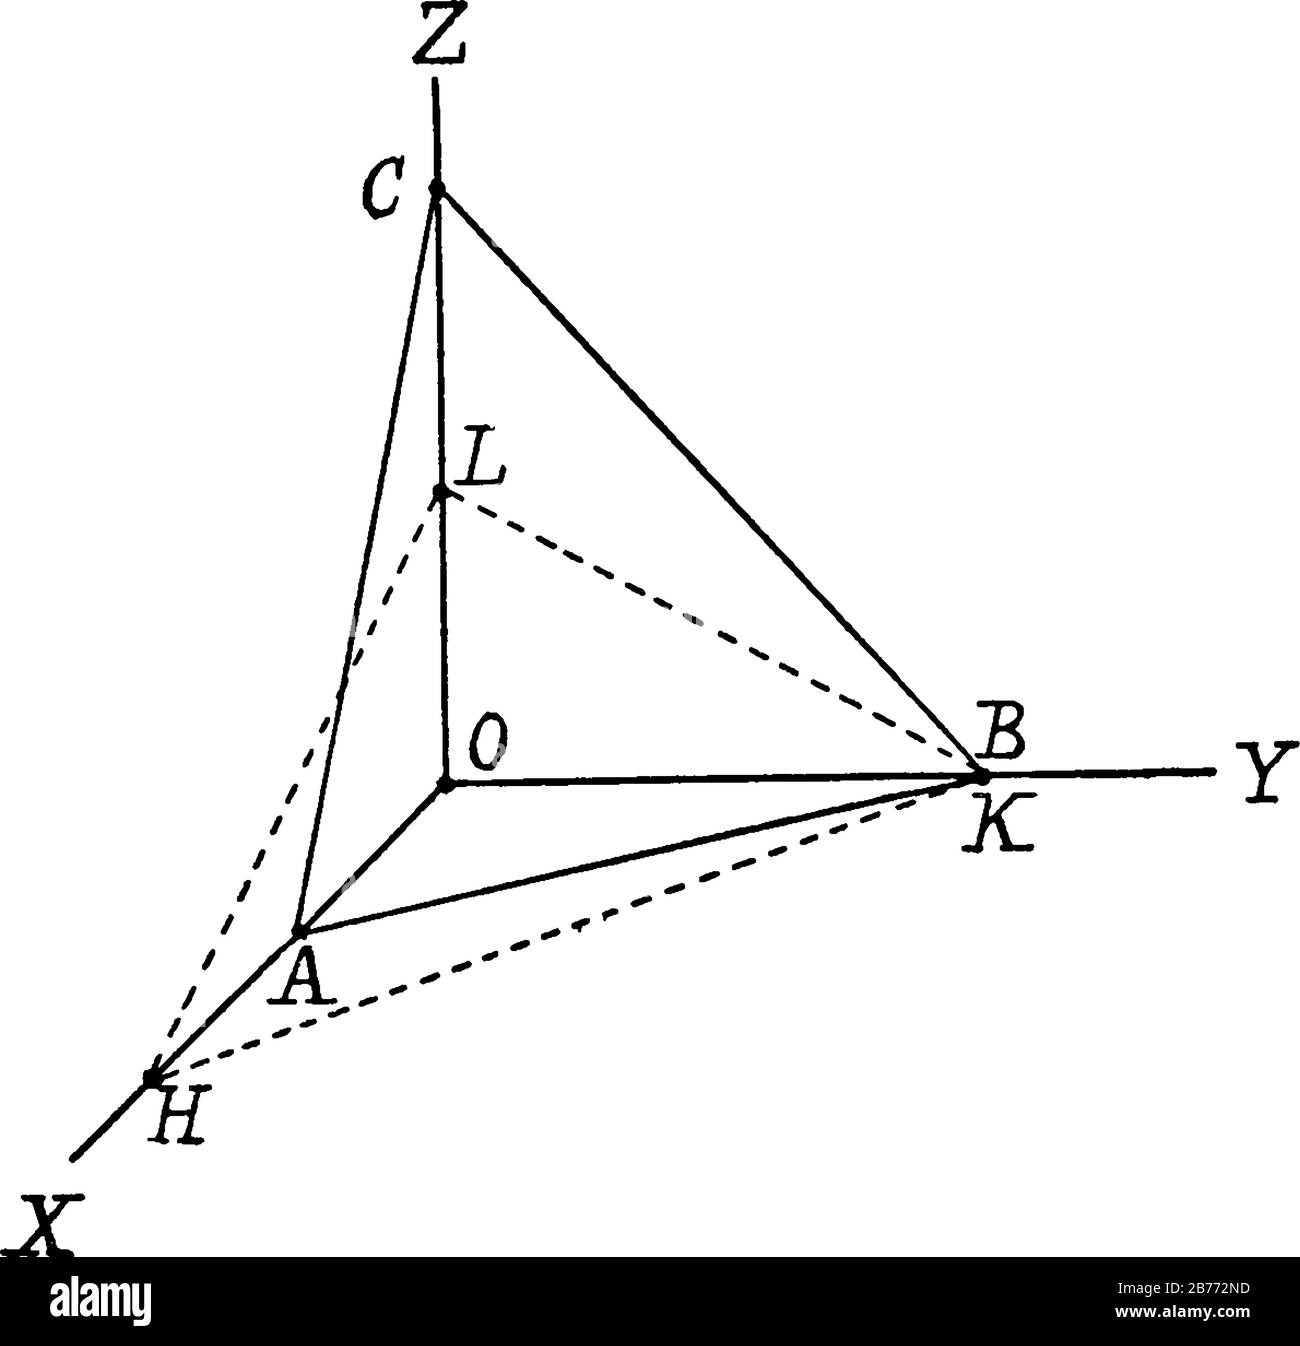 Un plan de coordonnées cartésiennes tridimensionnel avec axe des x, axe des y et axe des z, dessin de ligne vintage ou illustration de gravure. Illustration de Vecteur